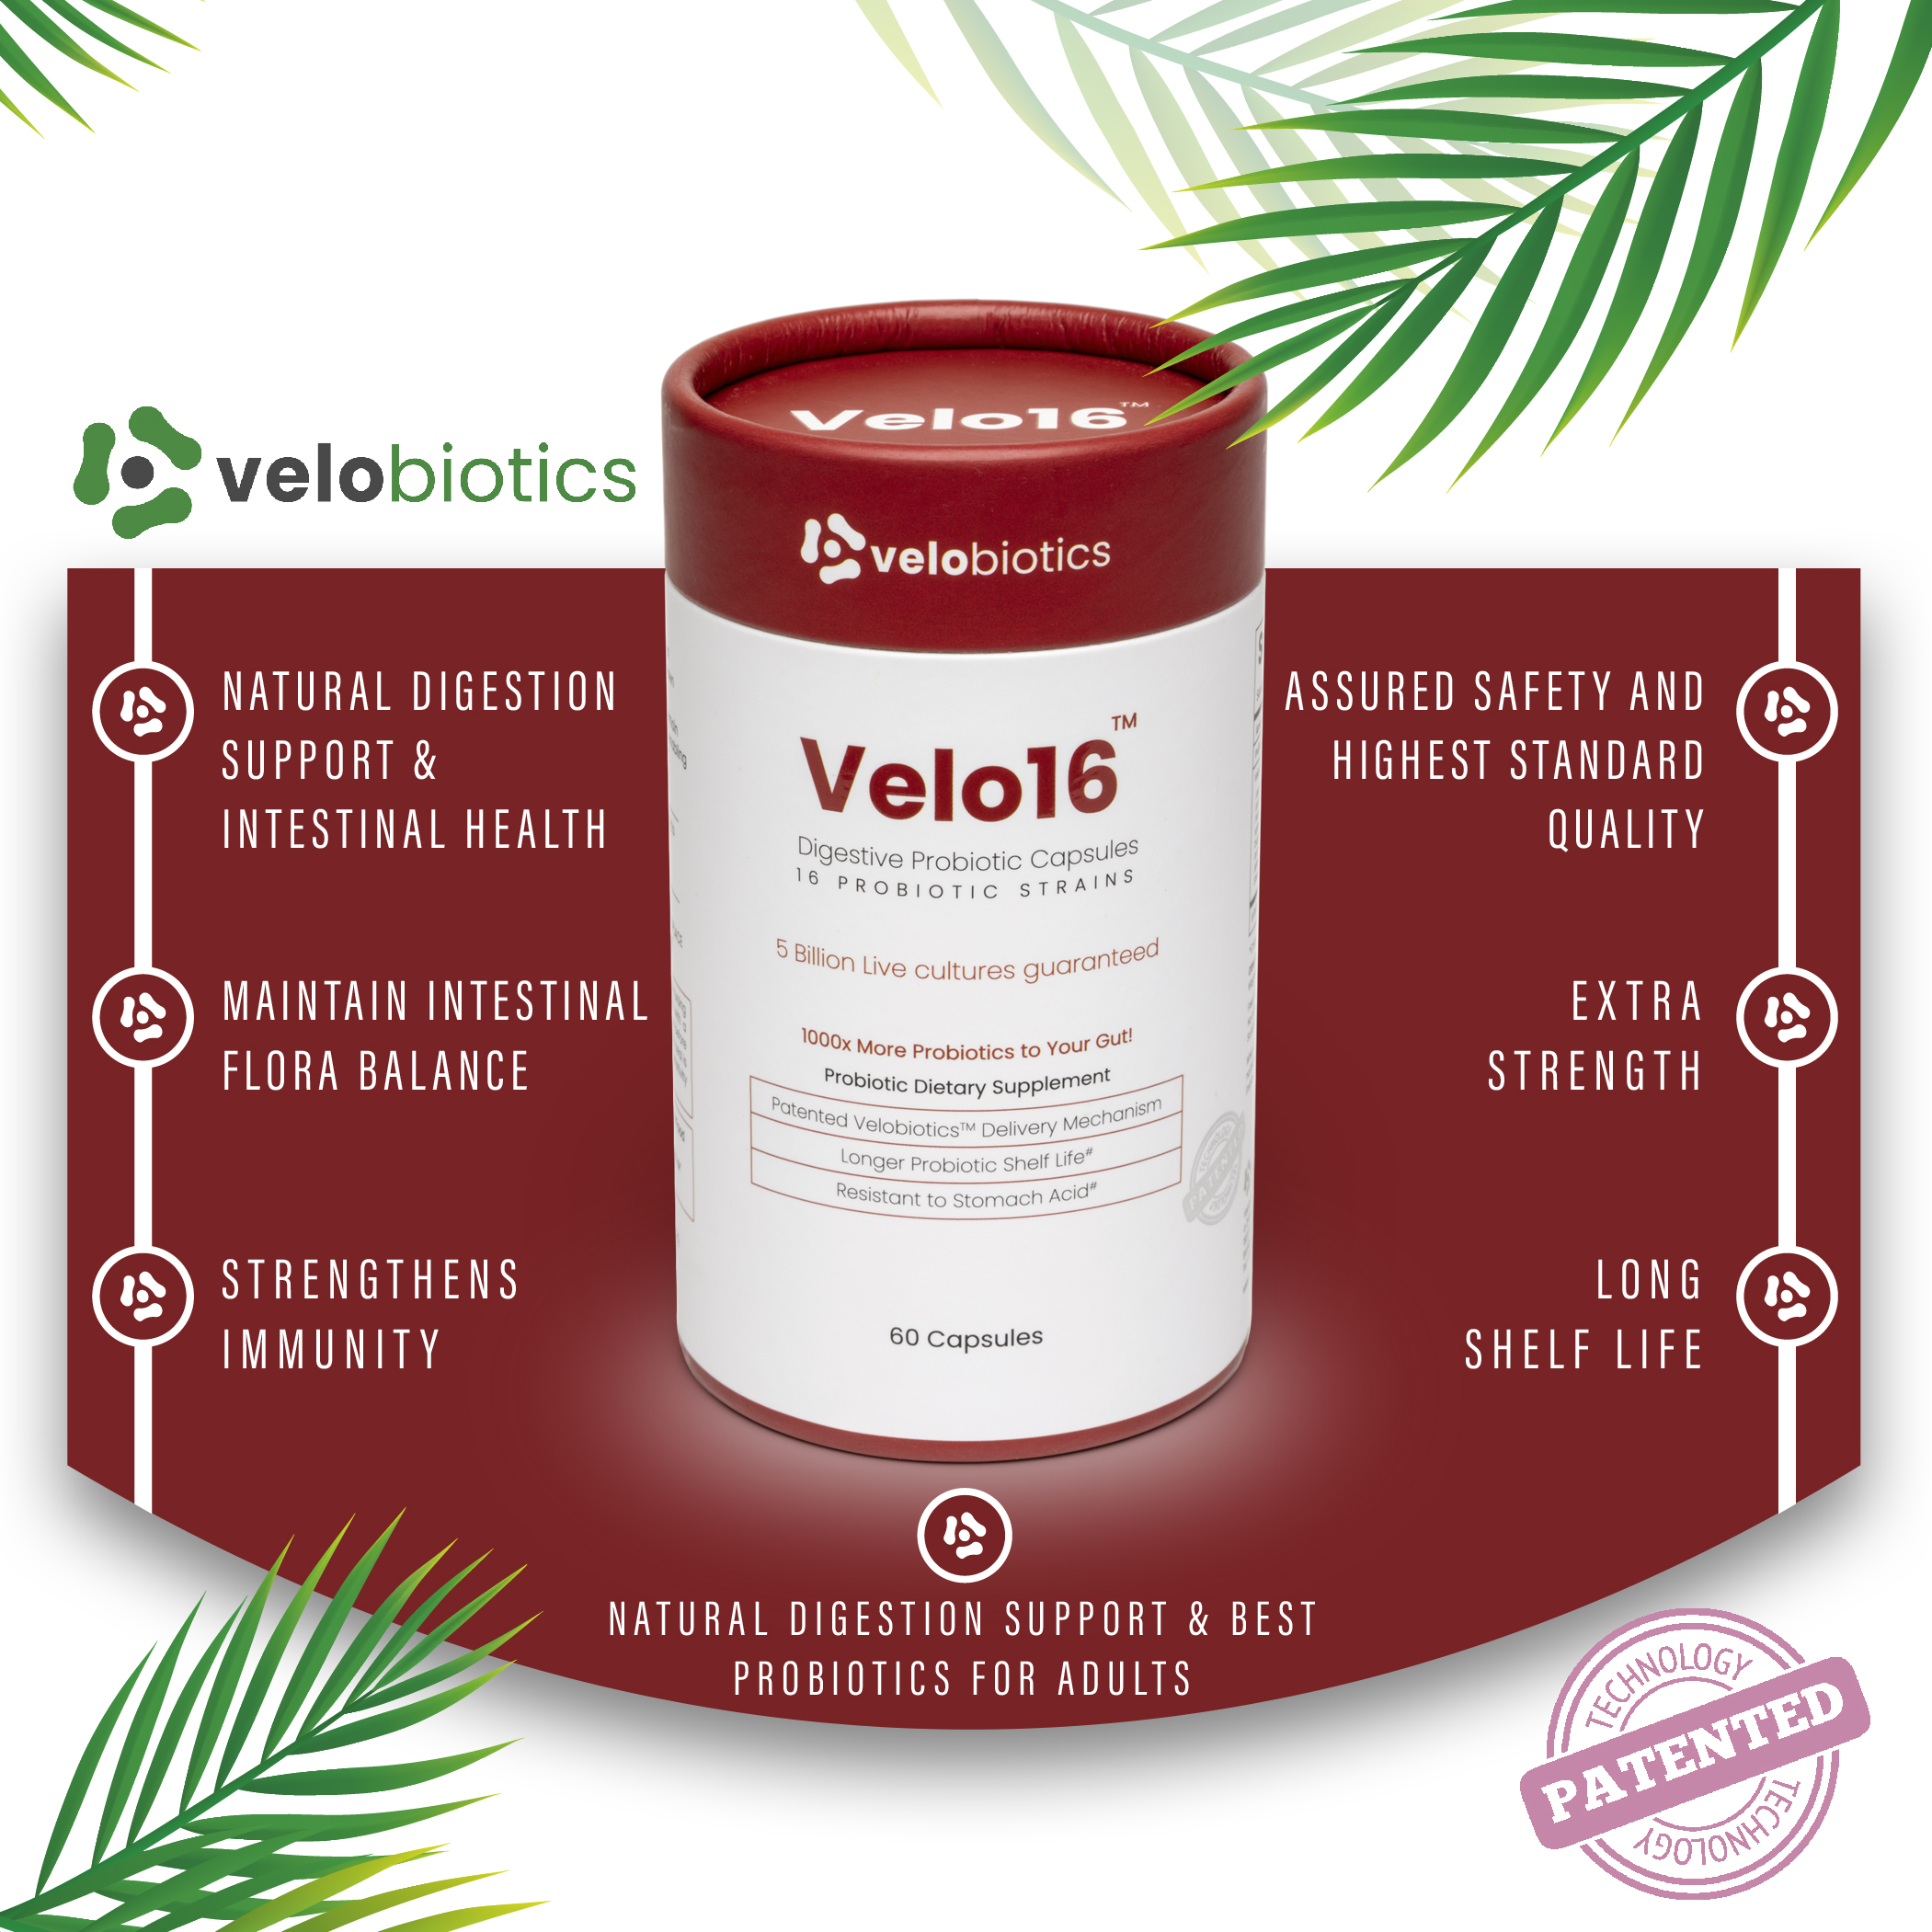 Velo16 - Health Benefits of using probiotics'